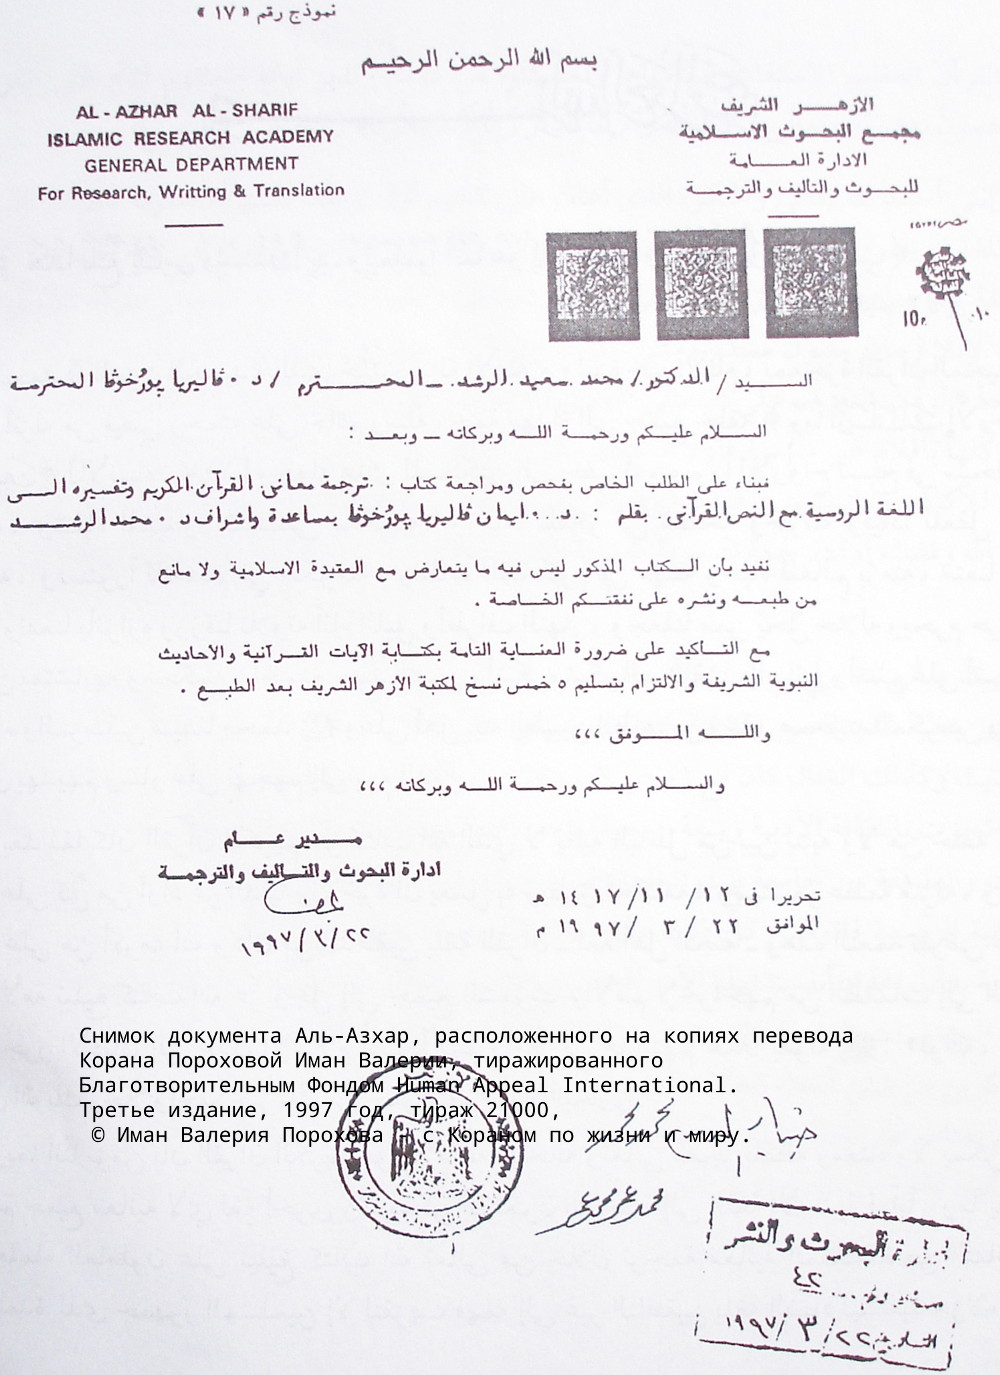 Официальный документ Аль-Азхар Аль-Шариф.